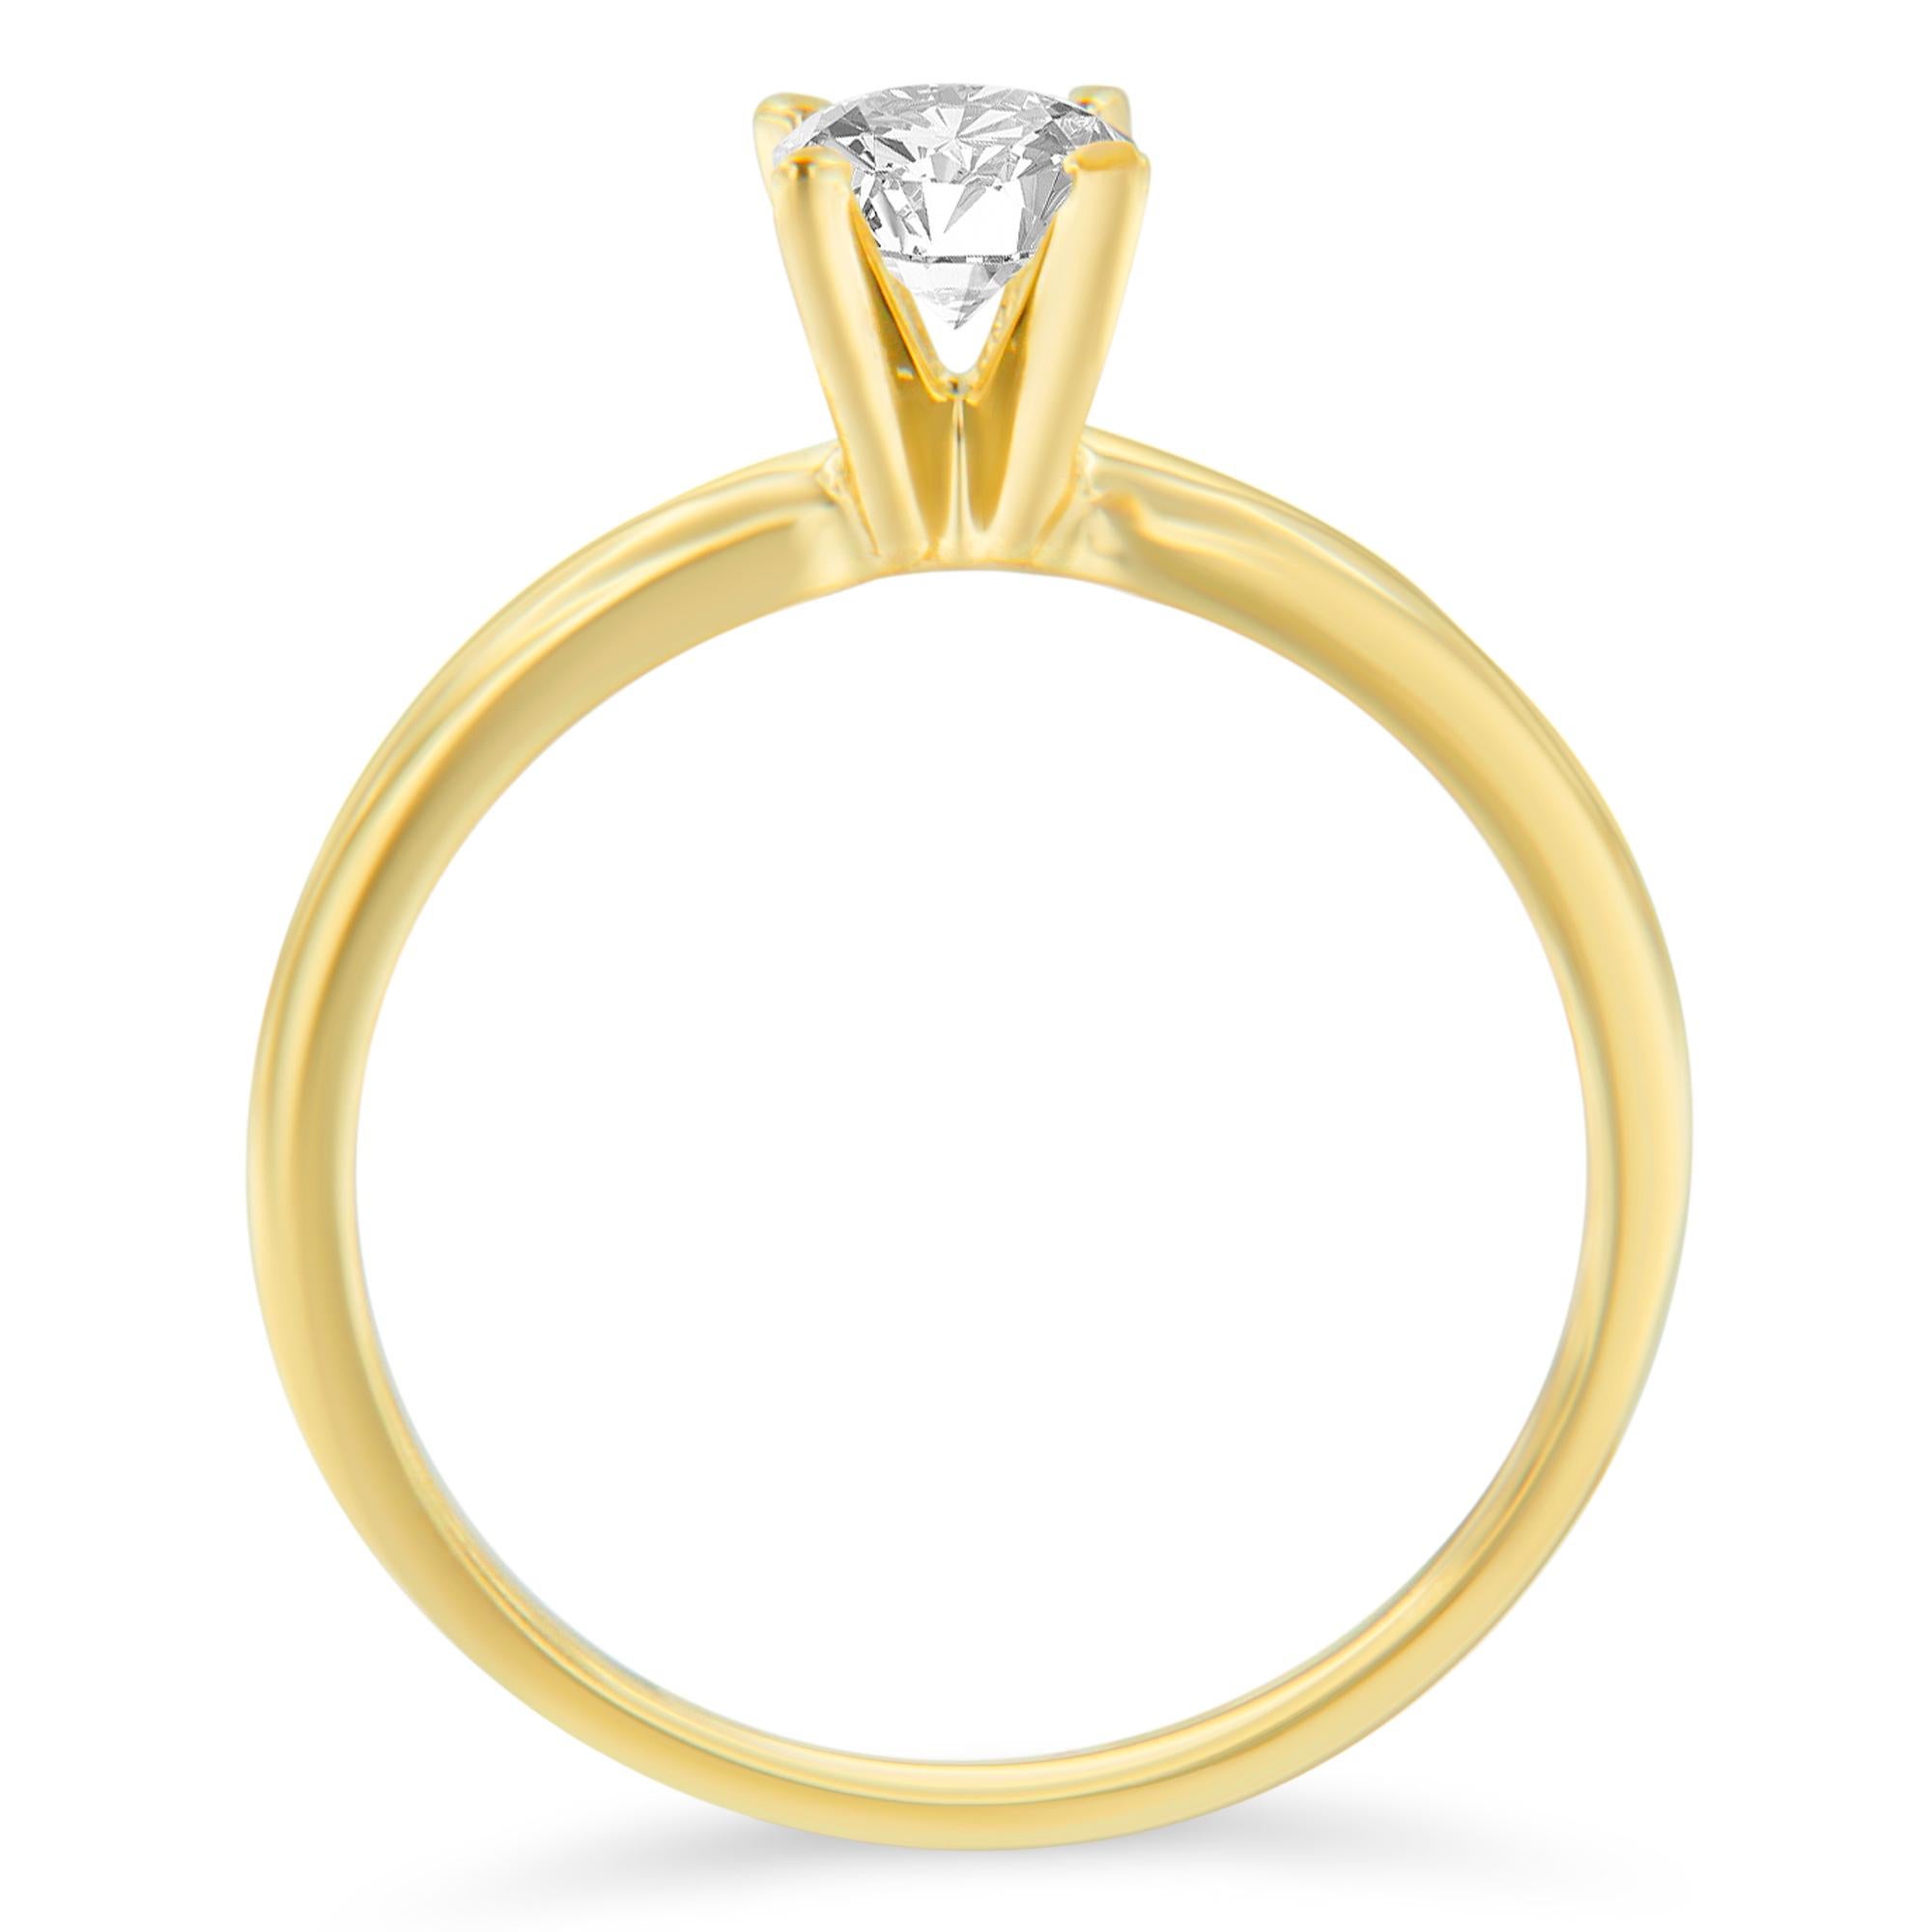 Déclarez votre amour à l'être cher avec cette magnifique bague de fiançailles en diamants de 1/2 ctw. Cette bague solitaire est dotée d'un anneau en or jaune 14k qui encadre parfaitement un diamant rond dans une monture classique à quatre griffes.